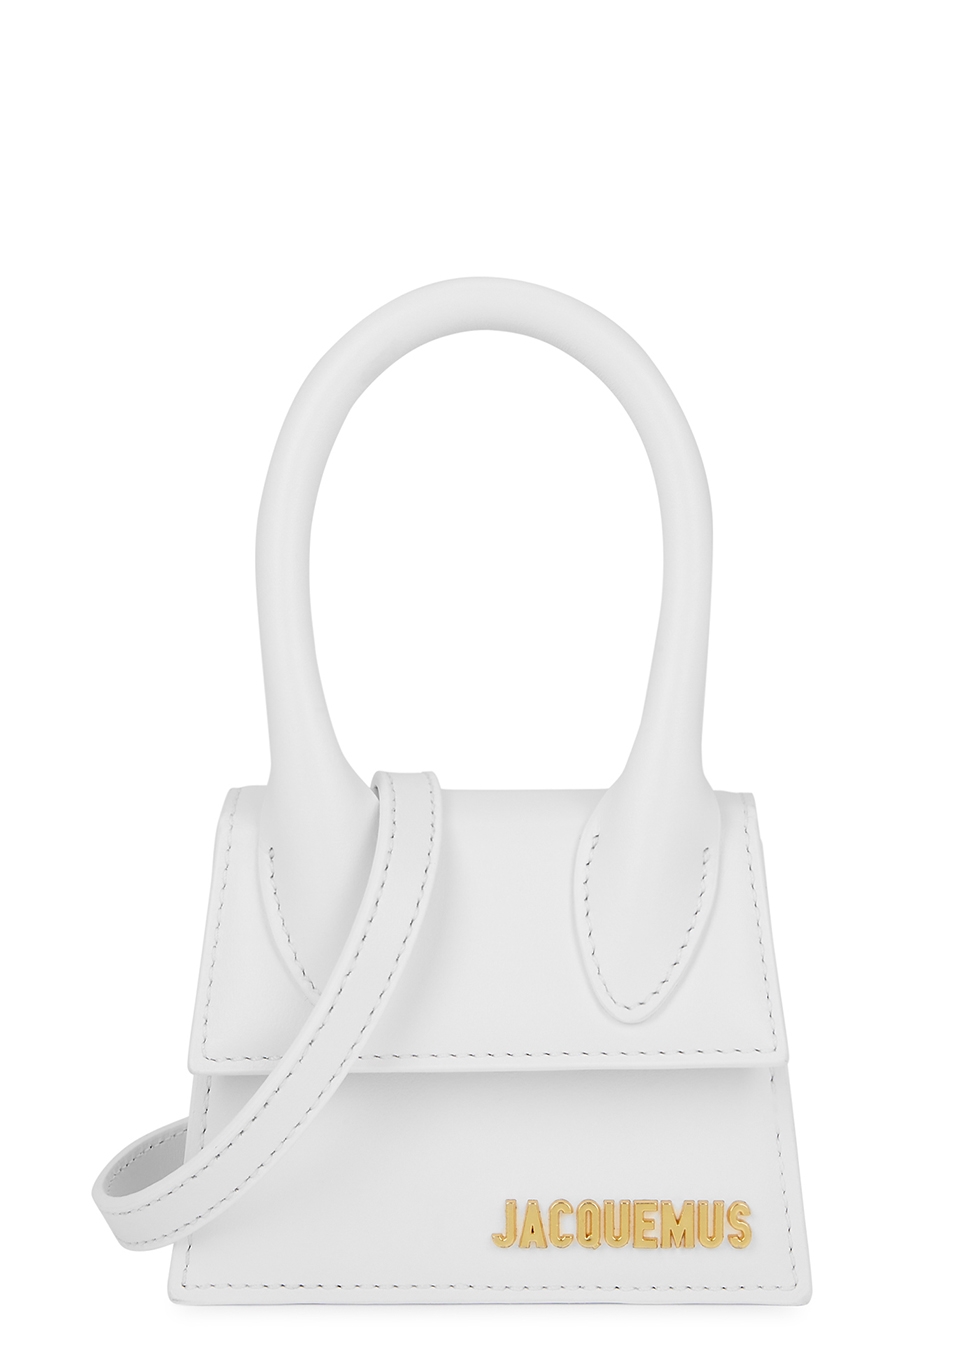 Jacquemus Le Chiquito white leather top handle bag - Harvey Nichols